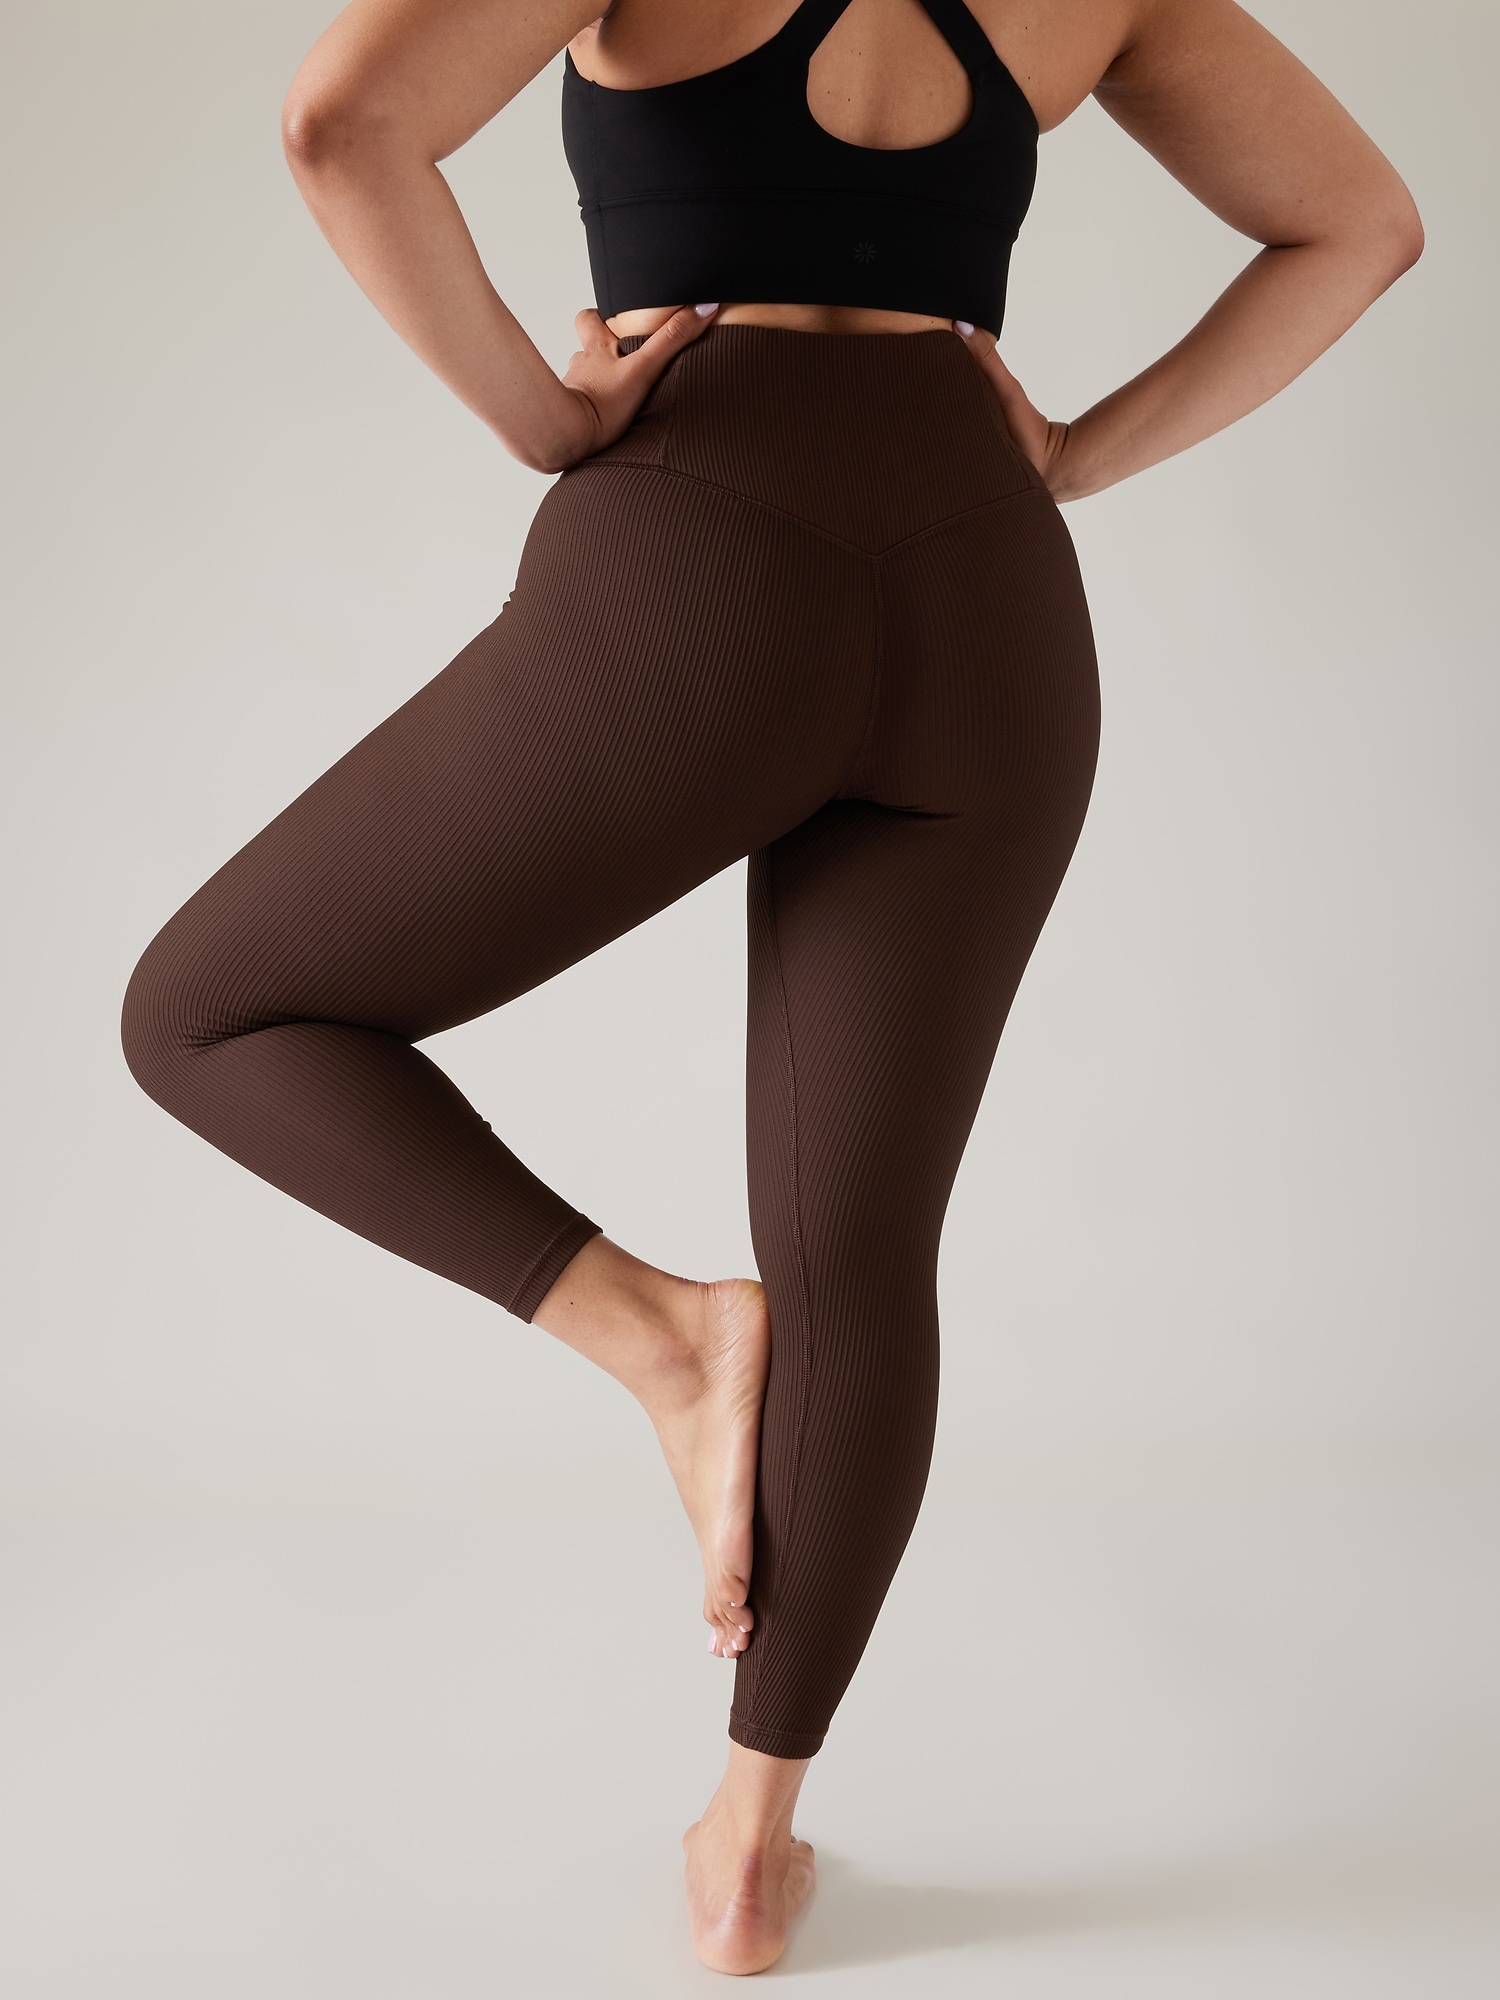 Lululemon - Brown Textured All Day Wear Leggings Nylon Elastane